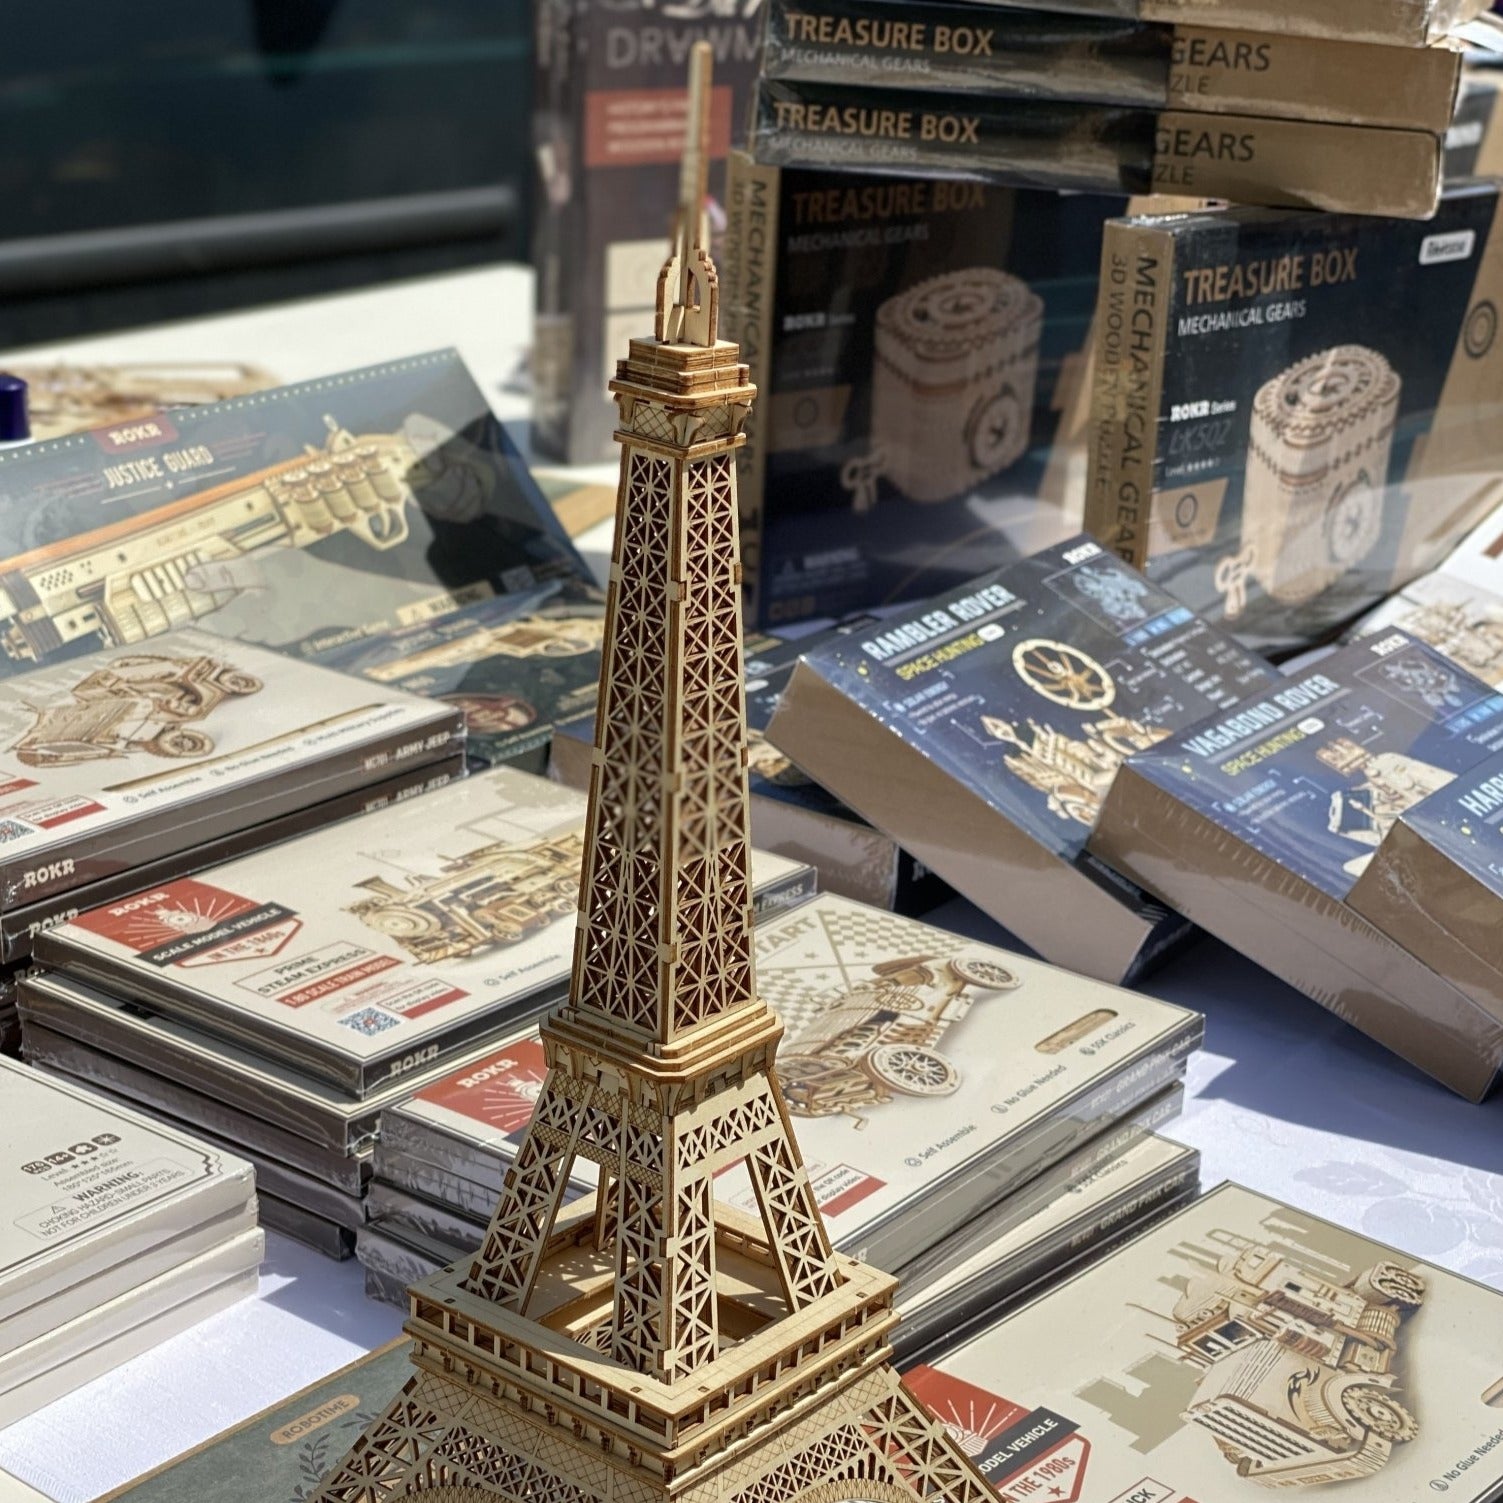 3D Puzzle Eiffelturm-3D Puzzle-Robotime--